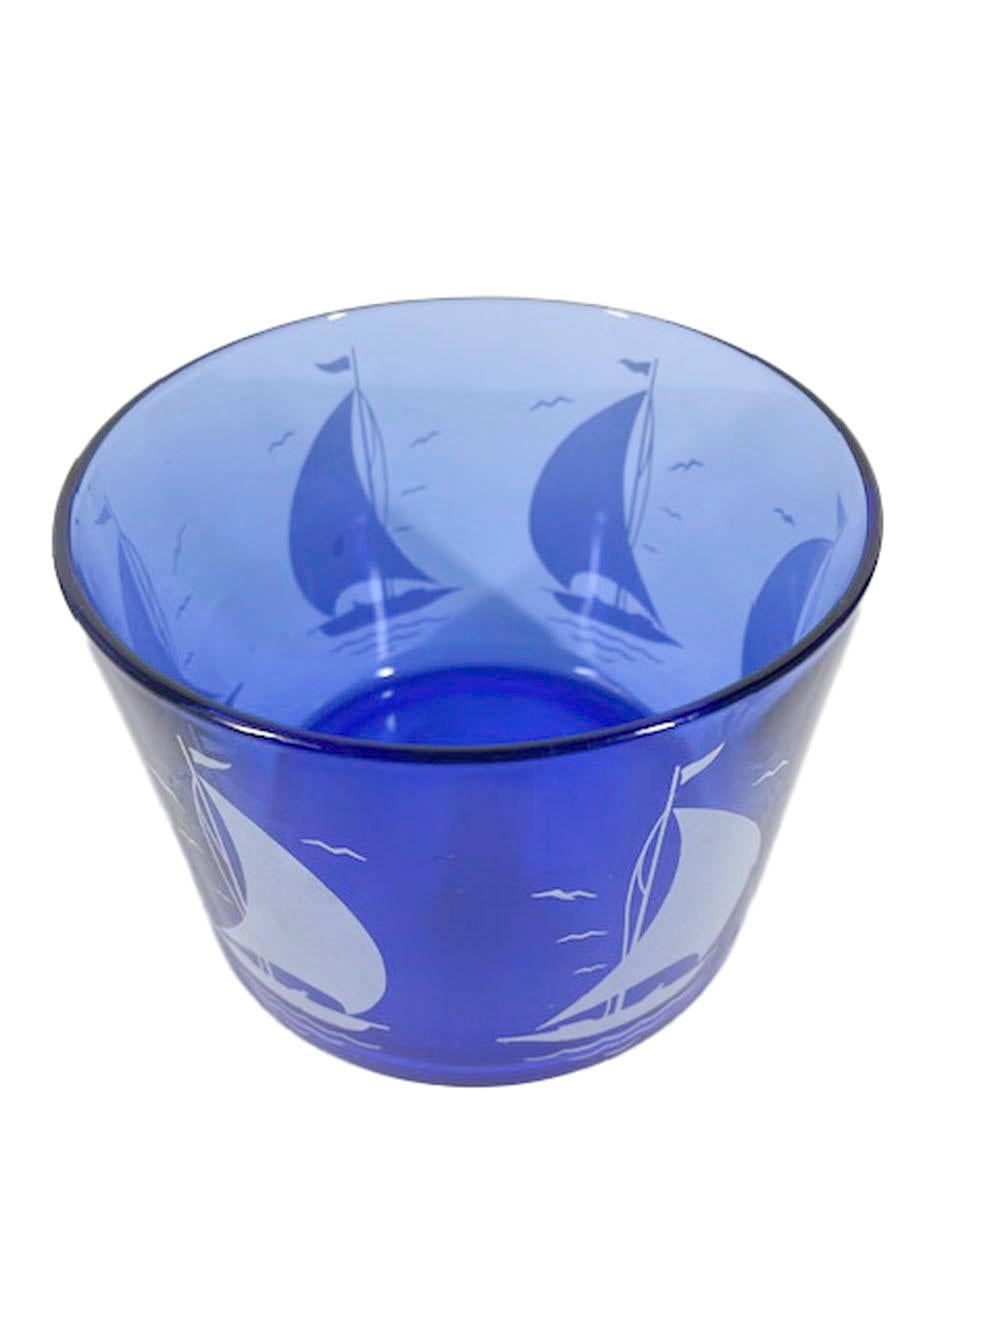 Coupe à glace Art Déco en verre bleu cobalt avec des voiliers blancs de la série Sportsman de Hazel-Atlas Glassware.